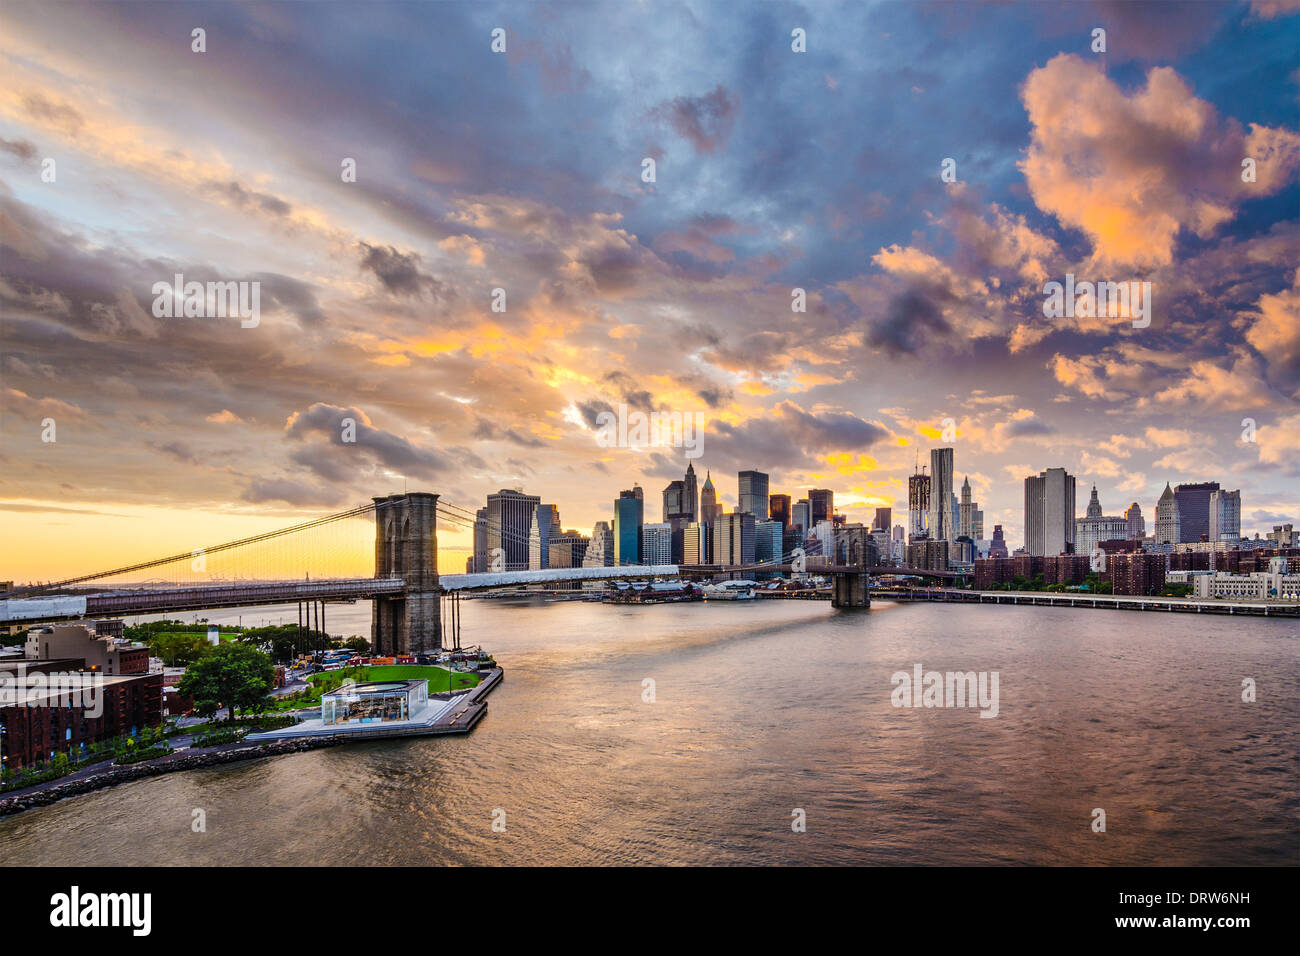 La ville de New York avec une couverture nuageuse. Banque D'Images